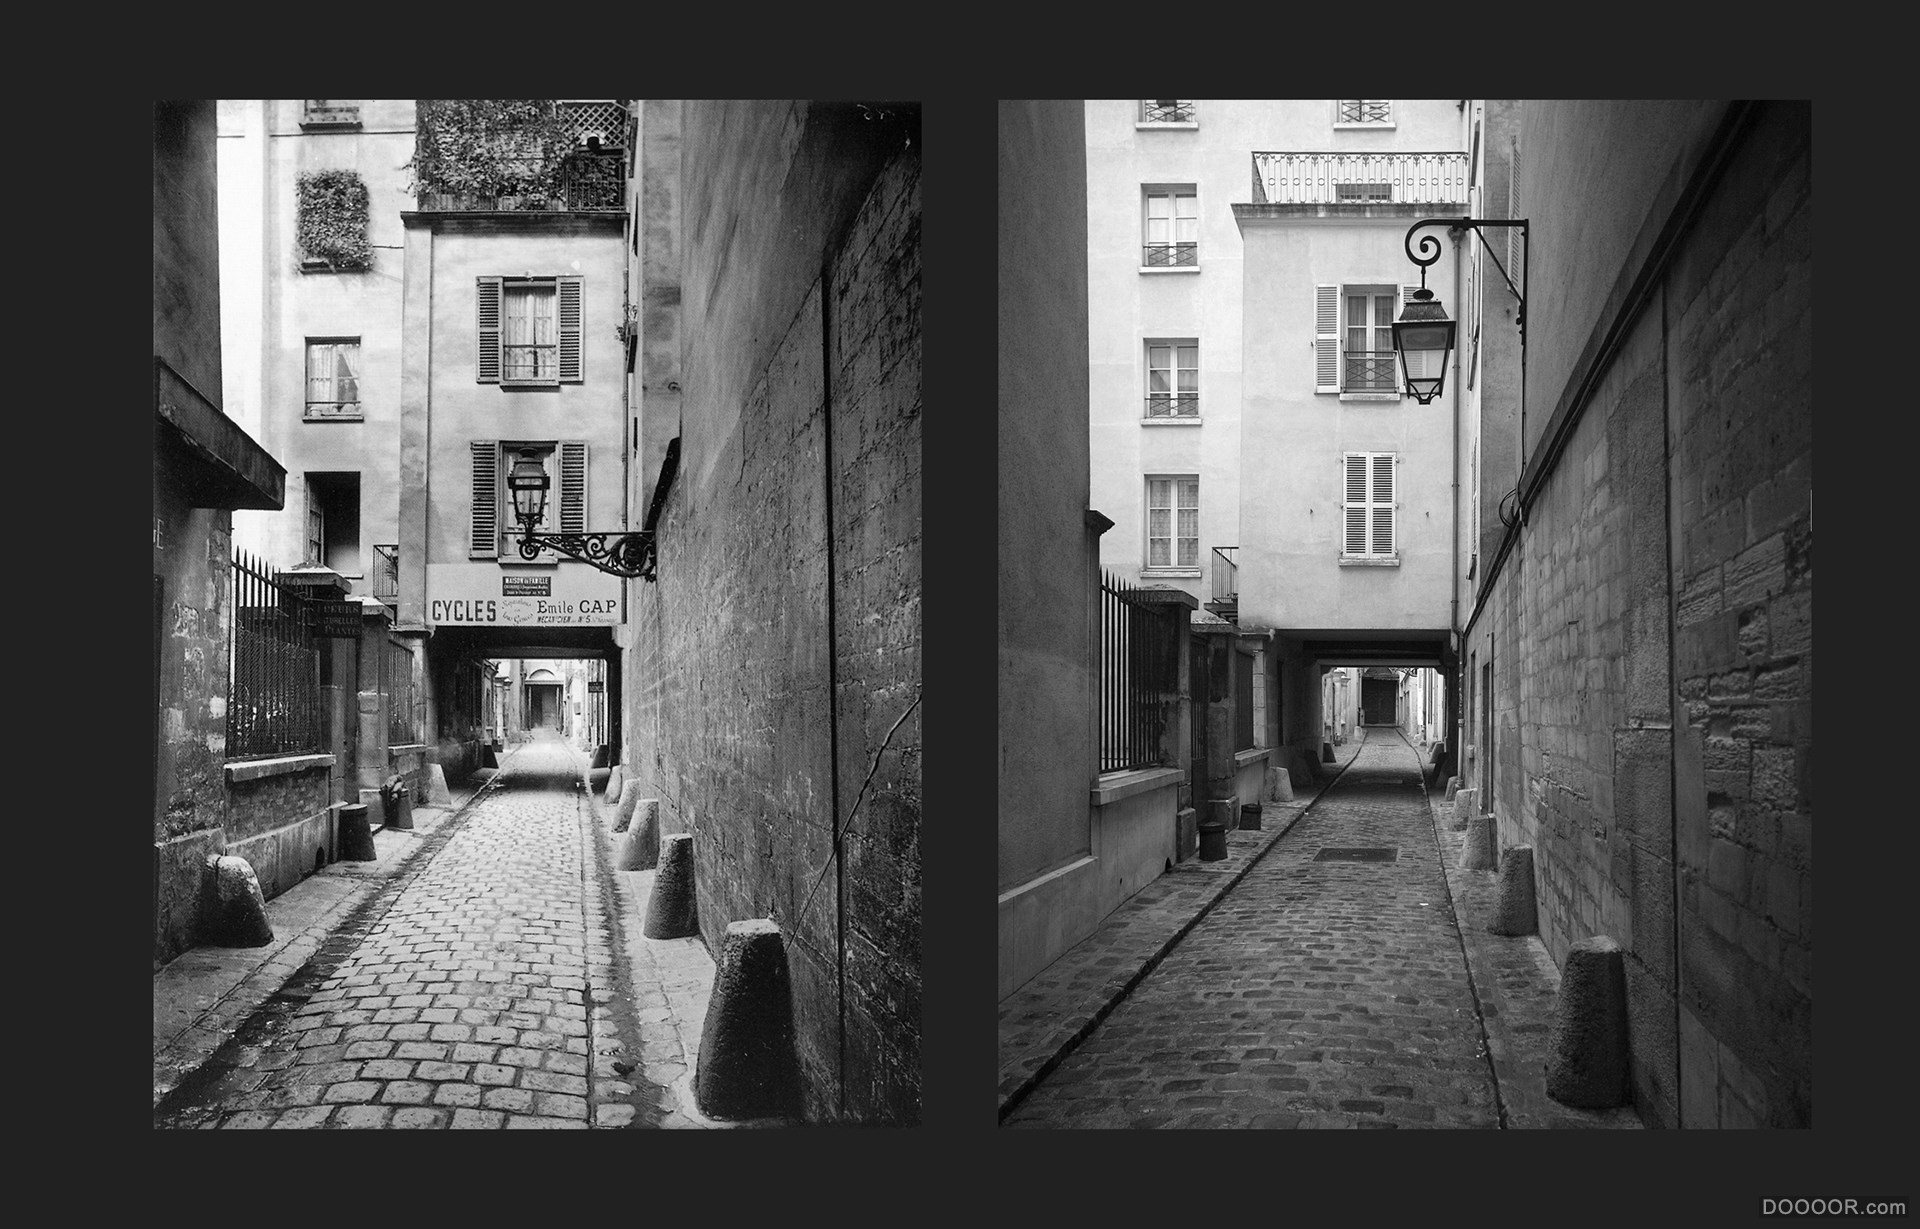 过去与现在-巴黎街头照片对比 [50P] (2).jpg